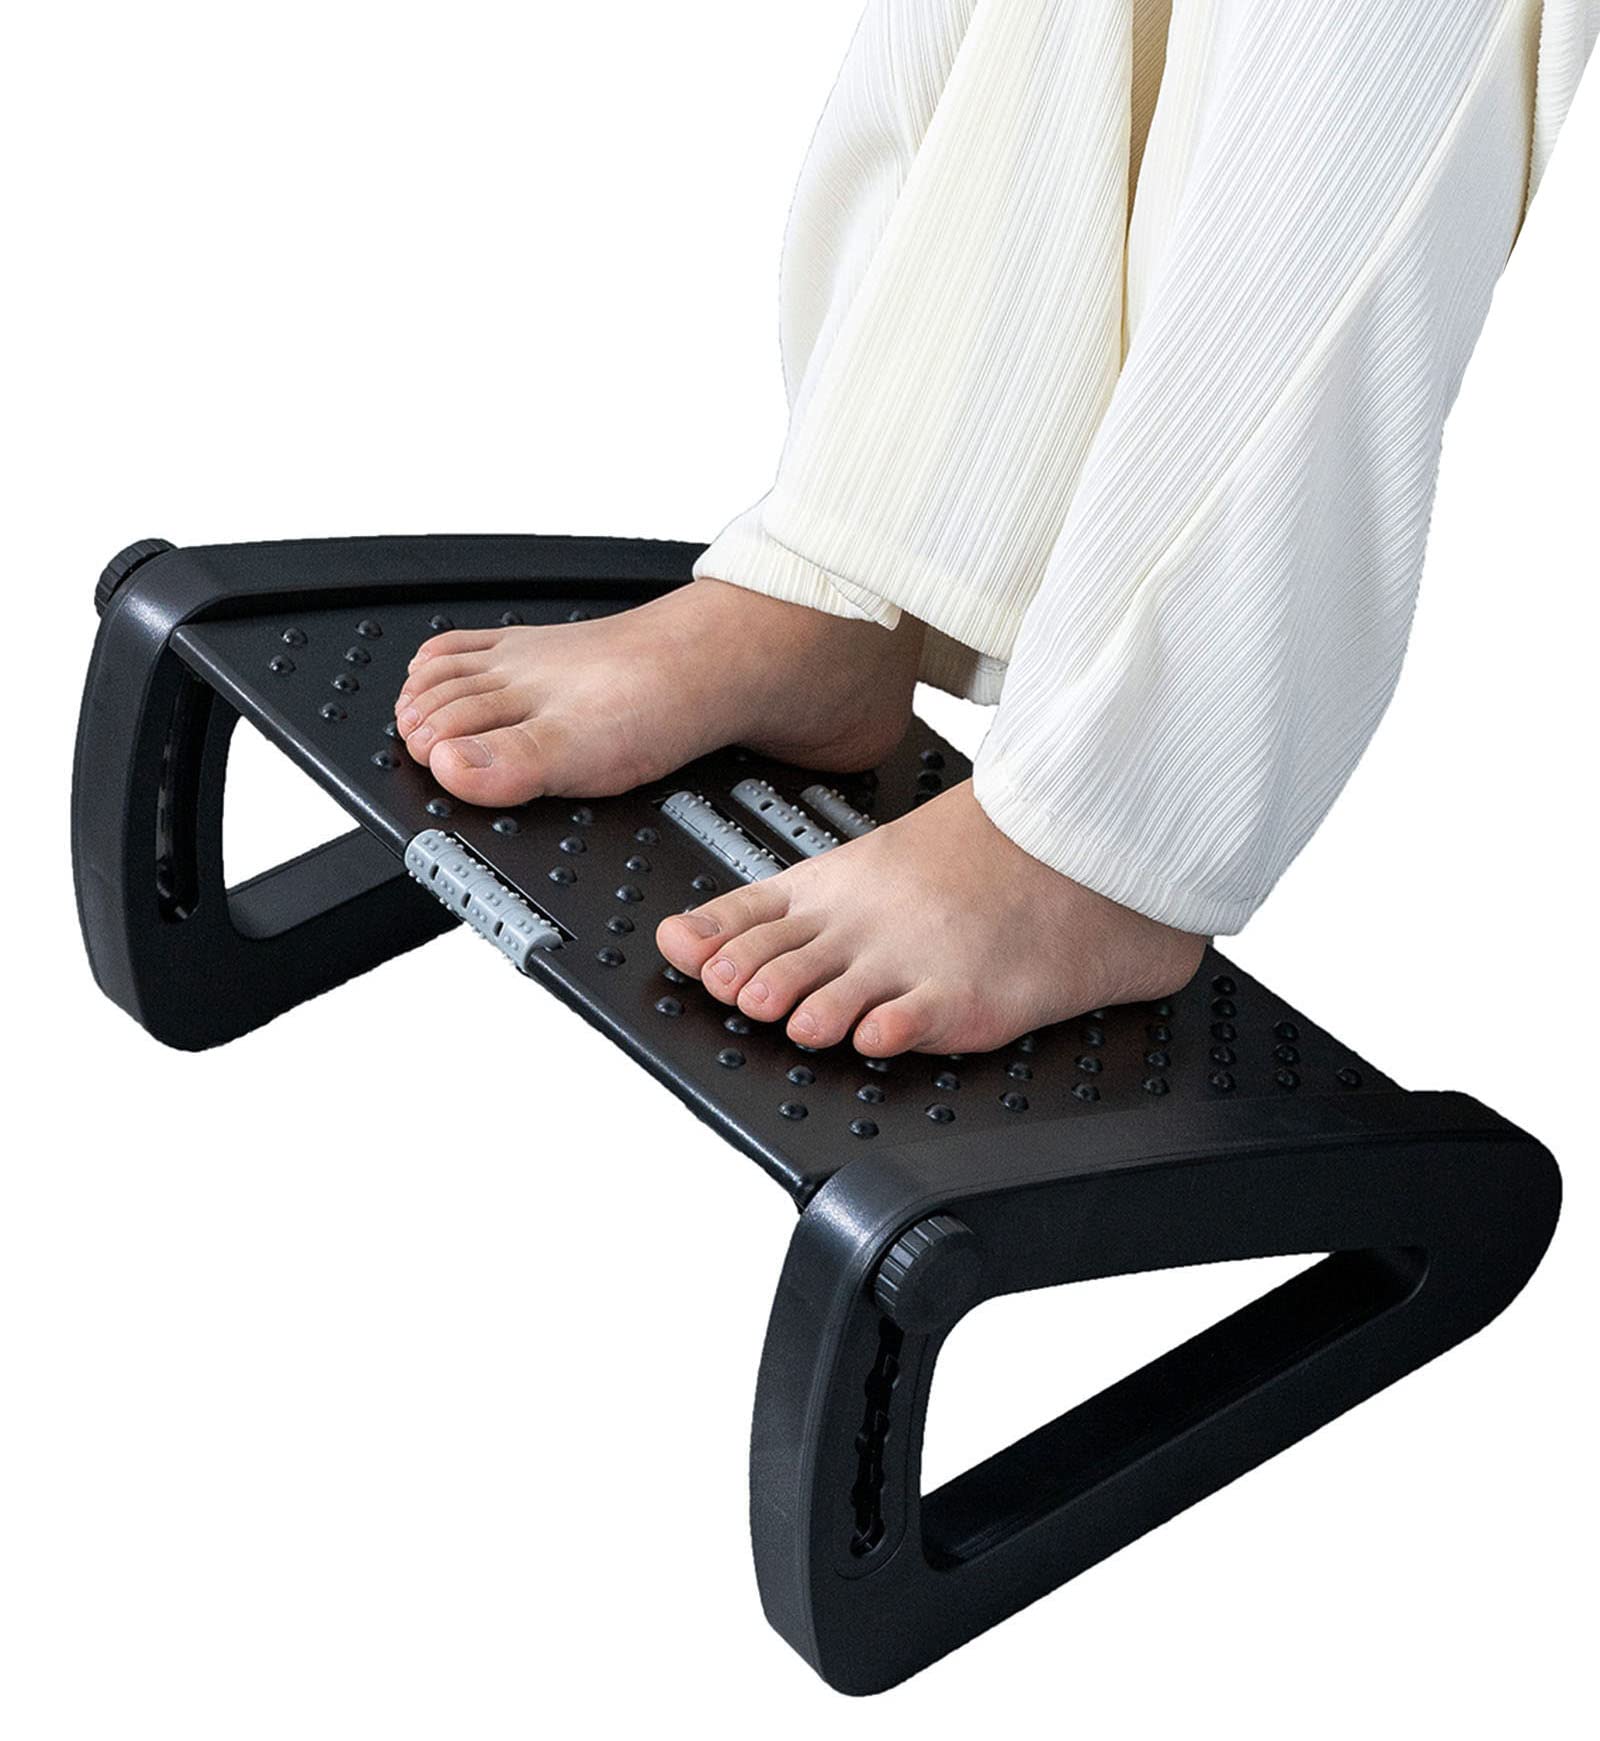 Ywbtflul Foot Rest for Under Desk at Work, Ergonomic 6 Heights Adjustable Footrest with Massage Roller, Portable Under Desk Foot Stool for Home,Office, Black